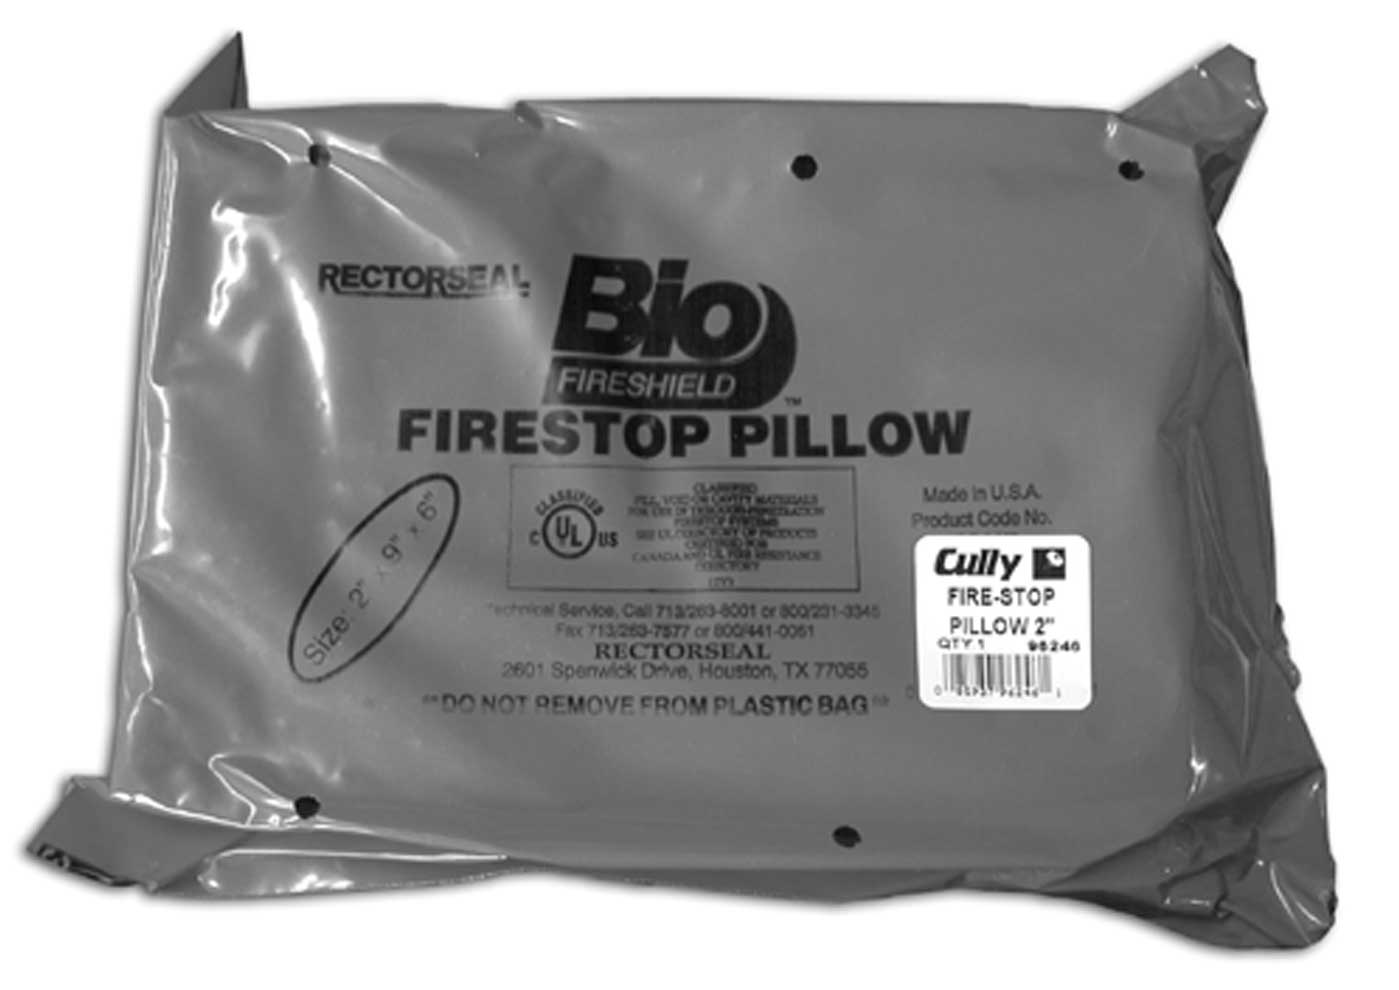 CULLY 96248 Firestop Pillow, 3 x 9 x 6"